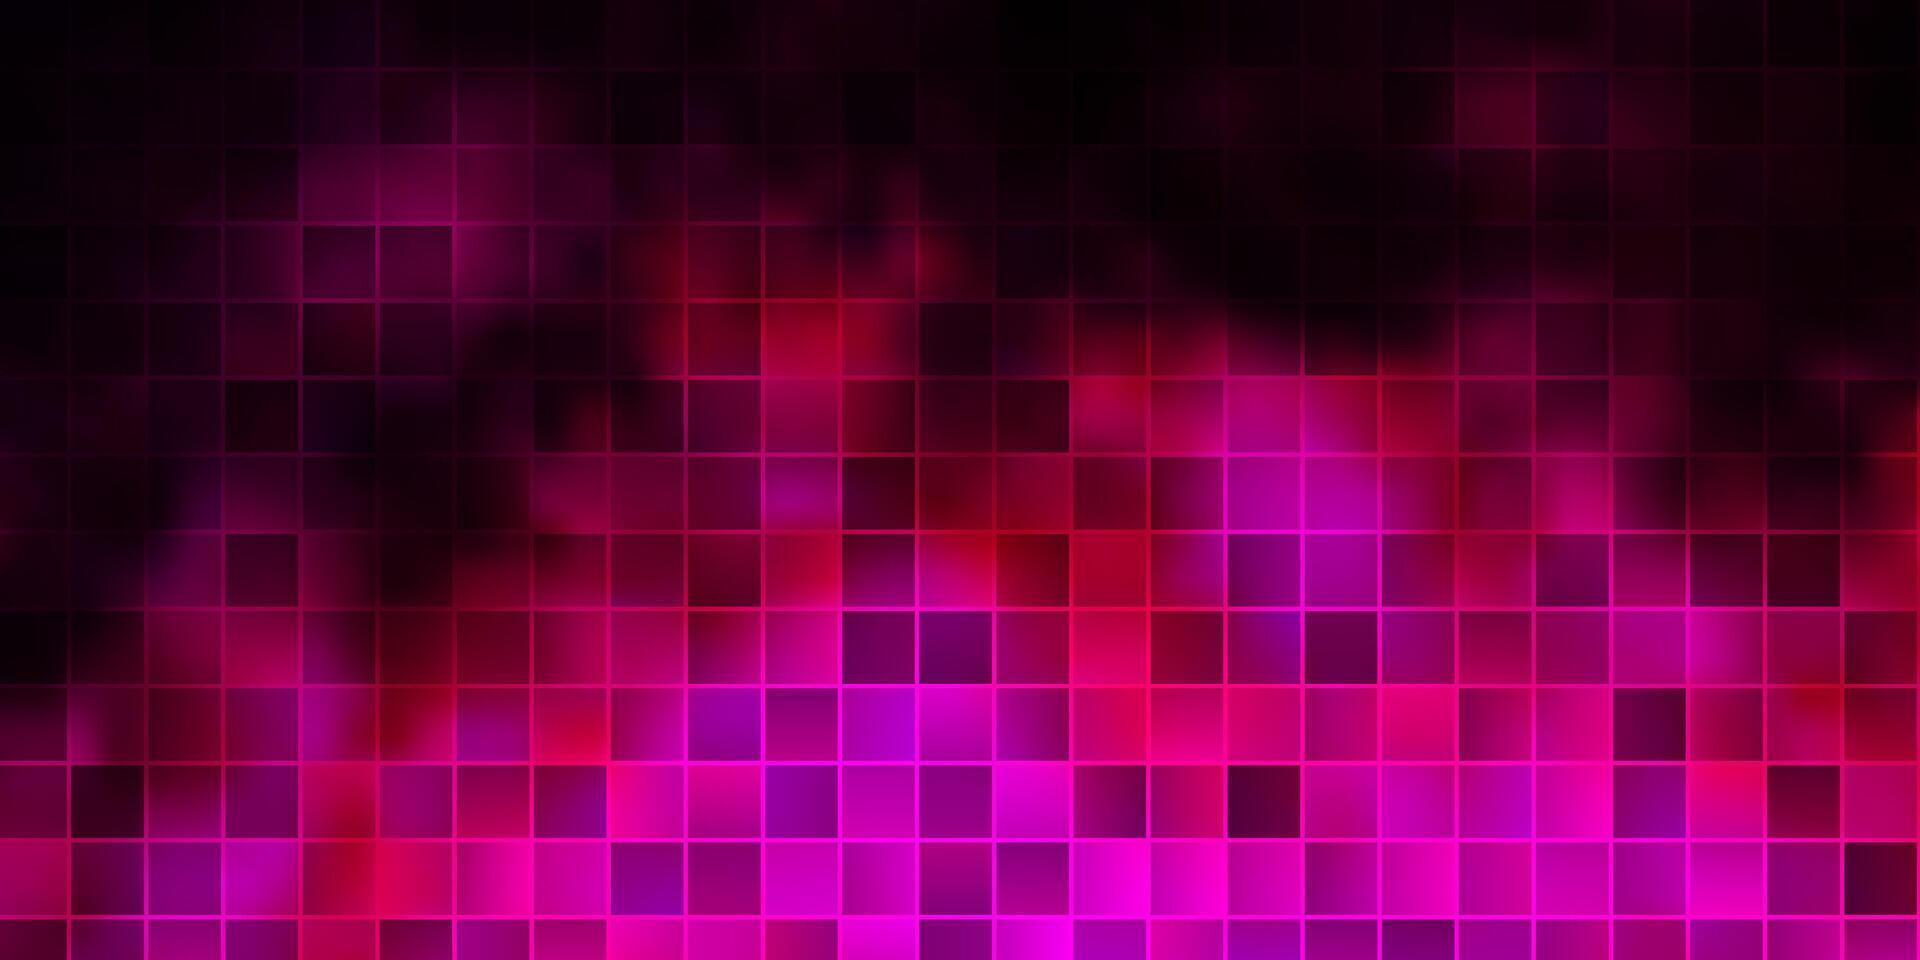 Fondo de vector rosa oscuro con rectángulos.